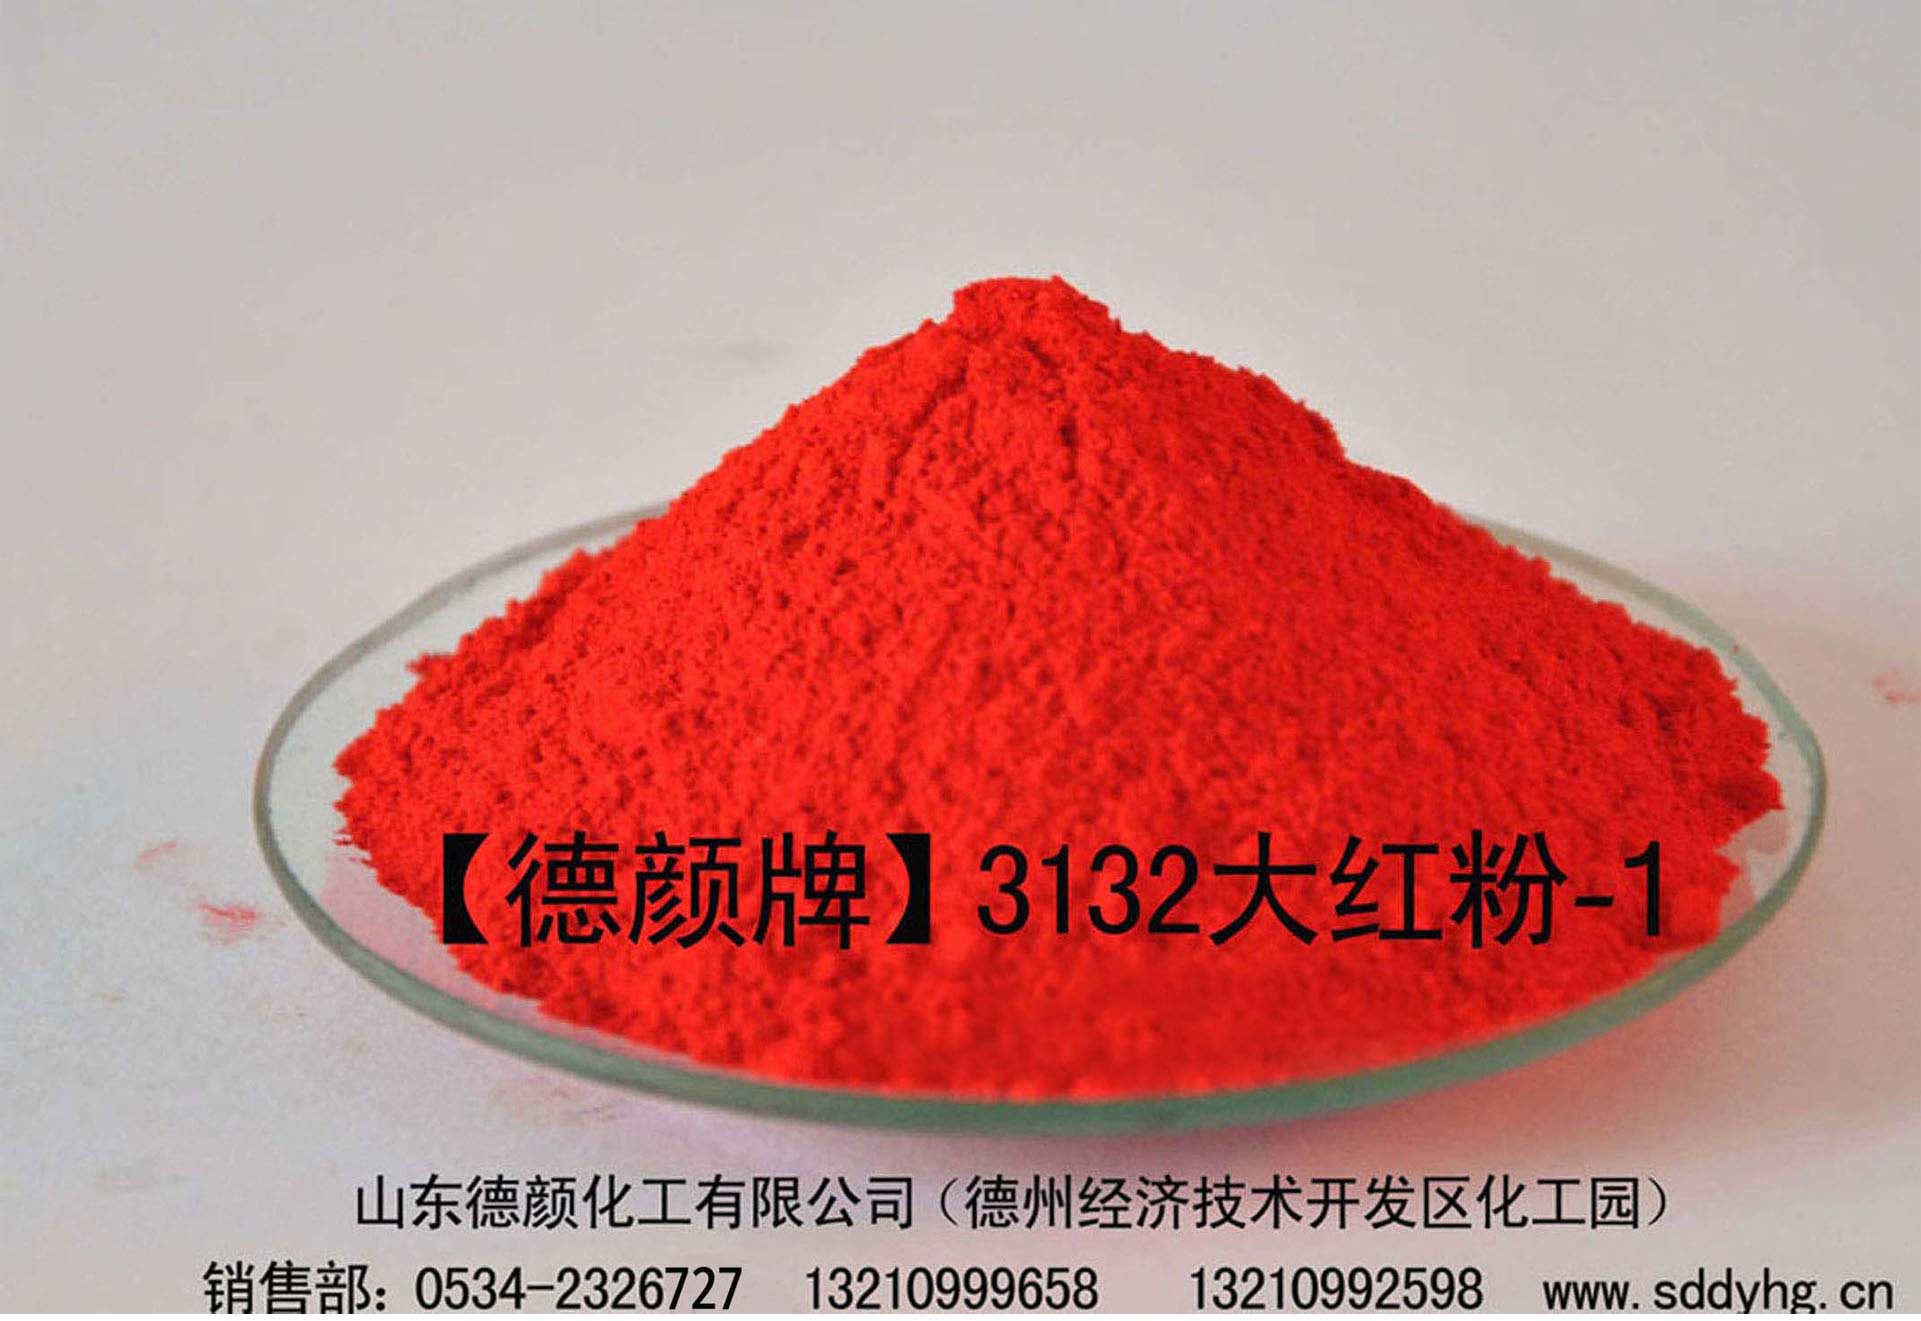 山东德颜化工专业生产油漆颜料3132大红粉（图）